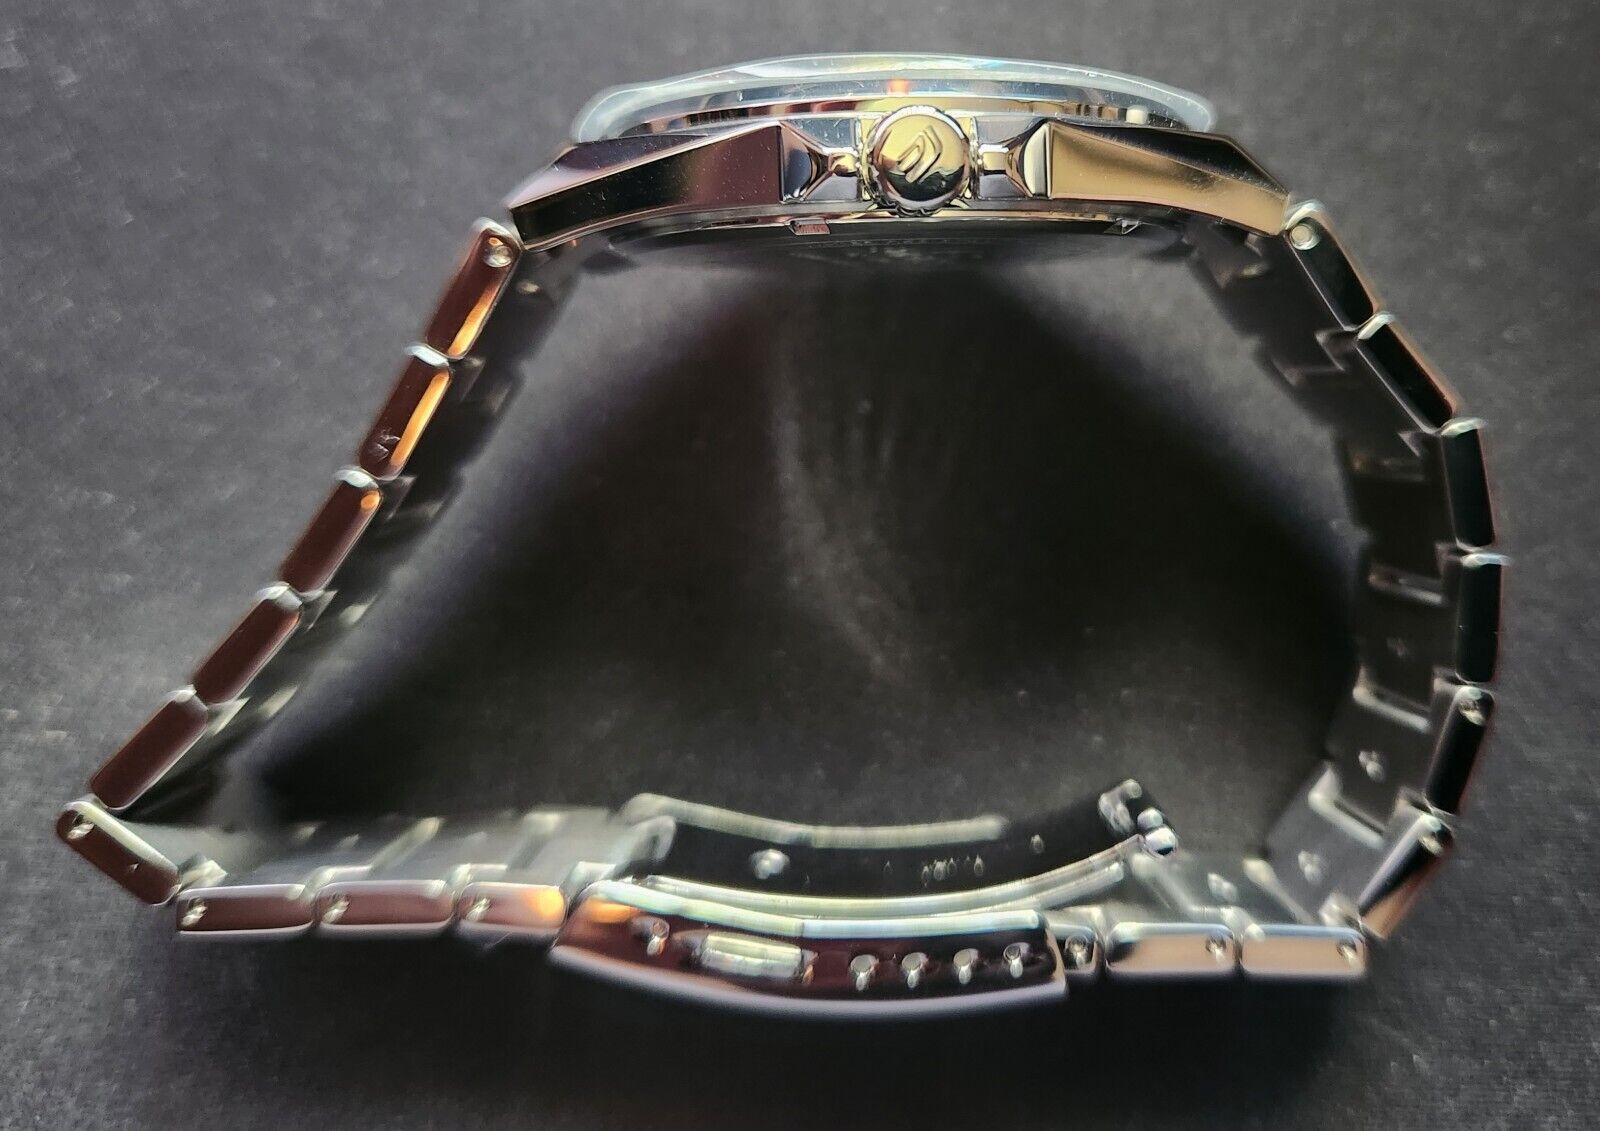 Casio Edifice EFB-108D-7A / EFB108D-7A Men's Silver Analog Watch | eBay